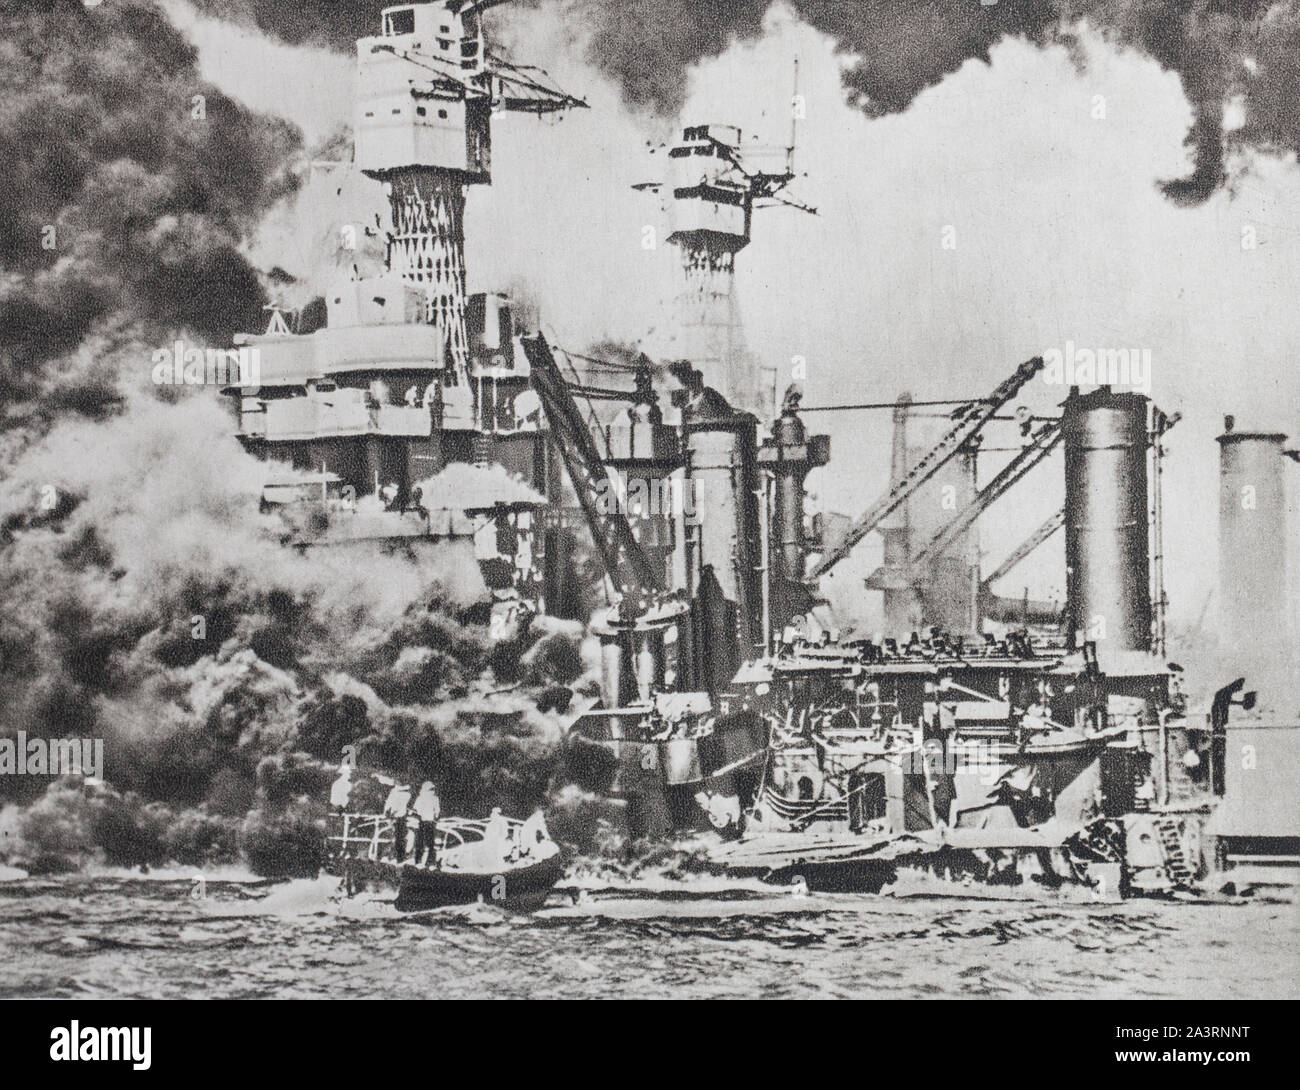 Die Zerstörer der amerikanischen Flotte in Pearl Harbor. Die amercain Cuirasse von 31.800 Tonnen "West Virginia" fällt und versinkt im Meer. Stockfoto